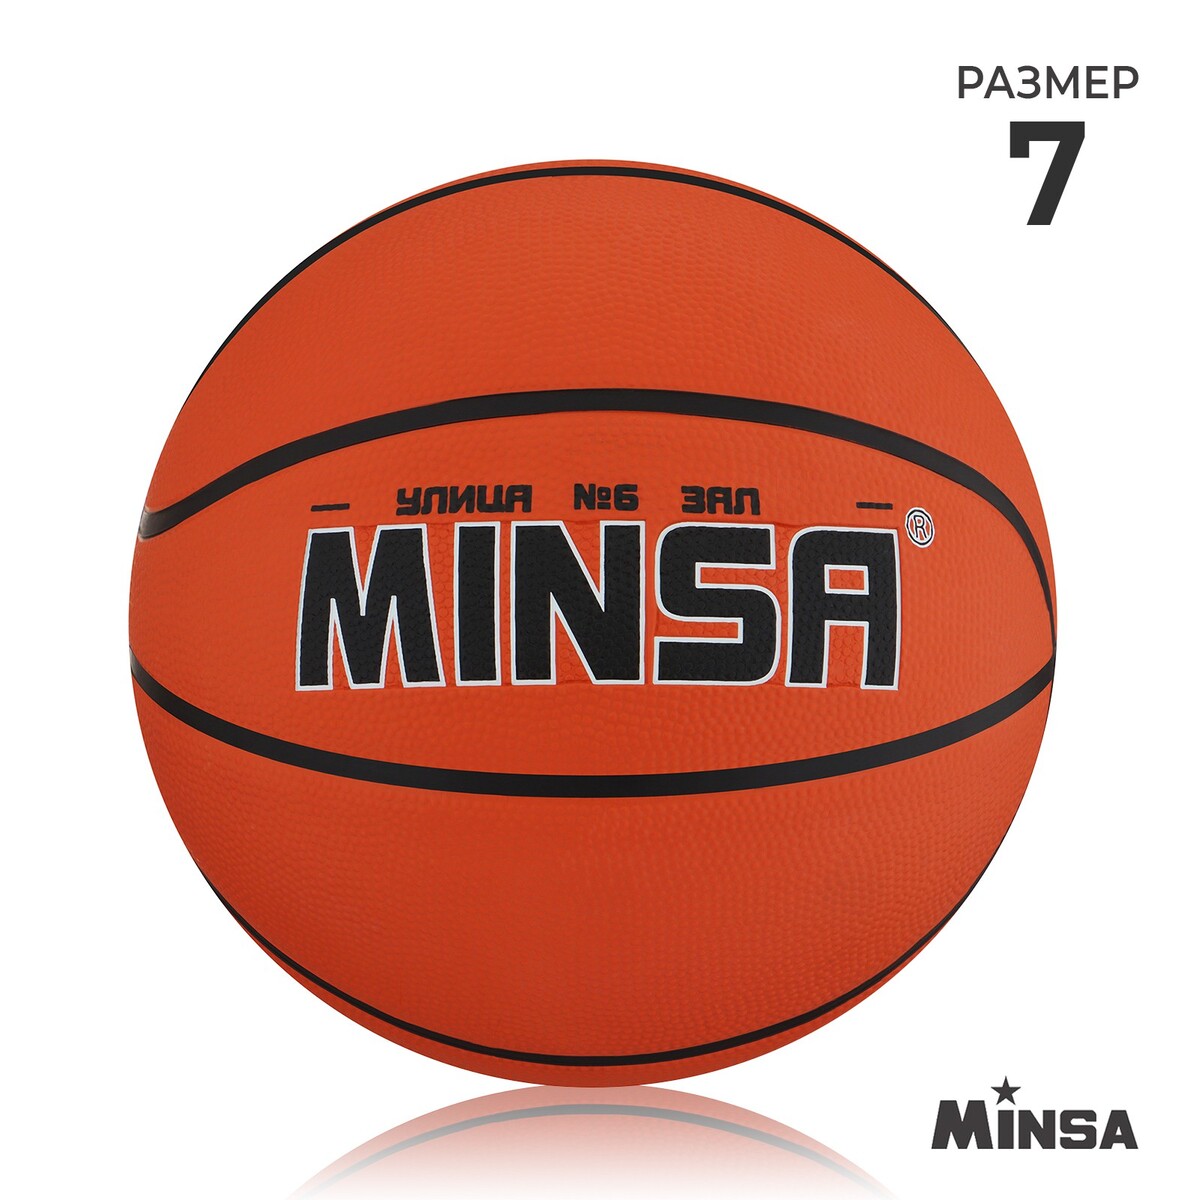 Мяч баскетбольный minsa, пвх, клееный, 8 панелей, р. 7 мяч баскетбольный minsa пвх клееный 8 панелей р 5